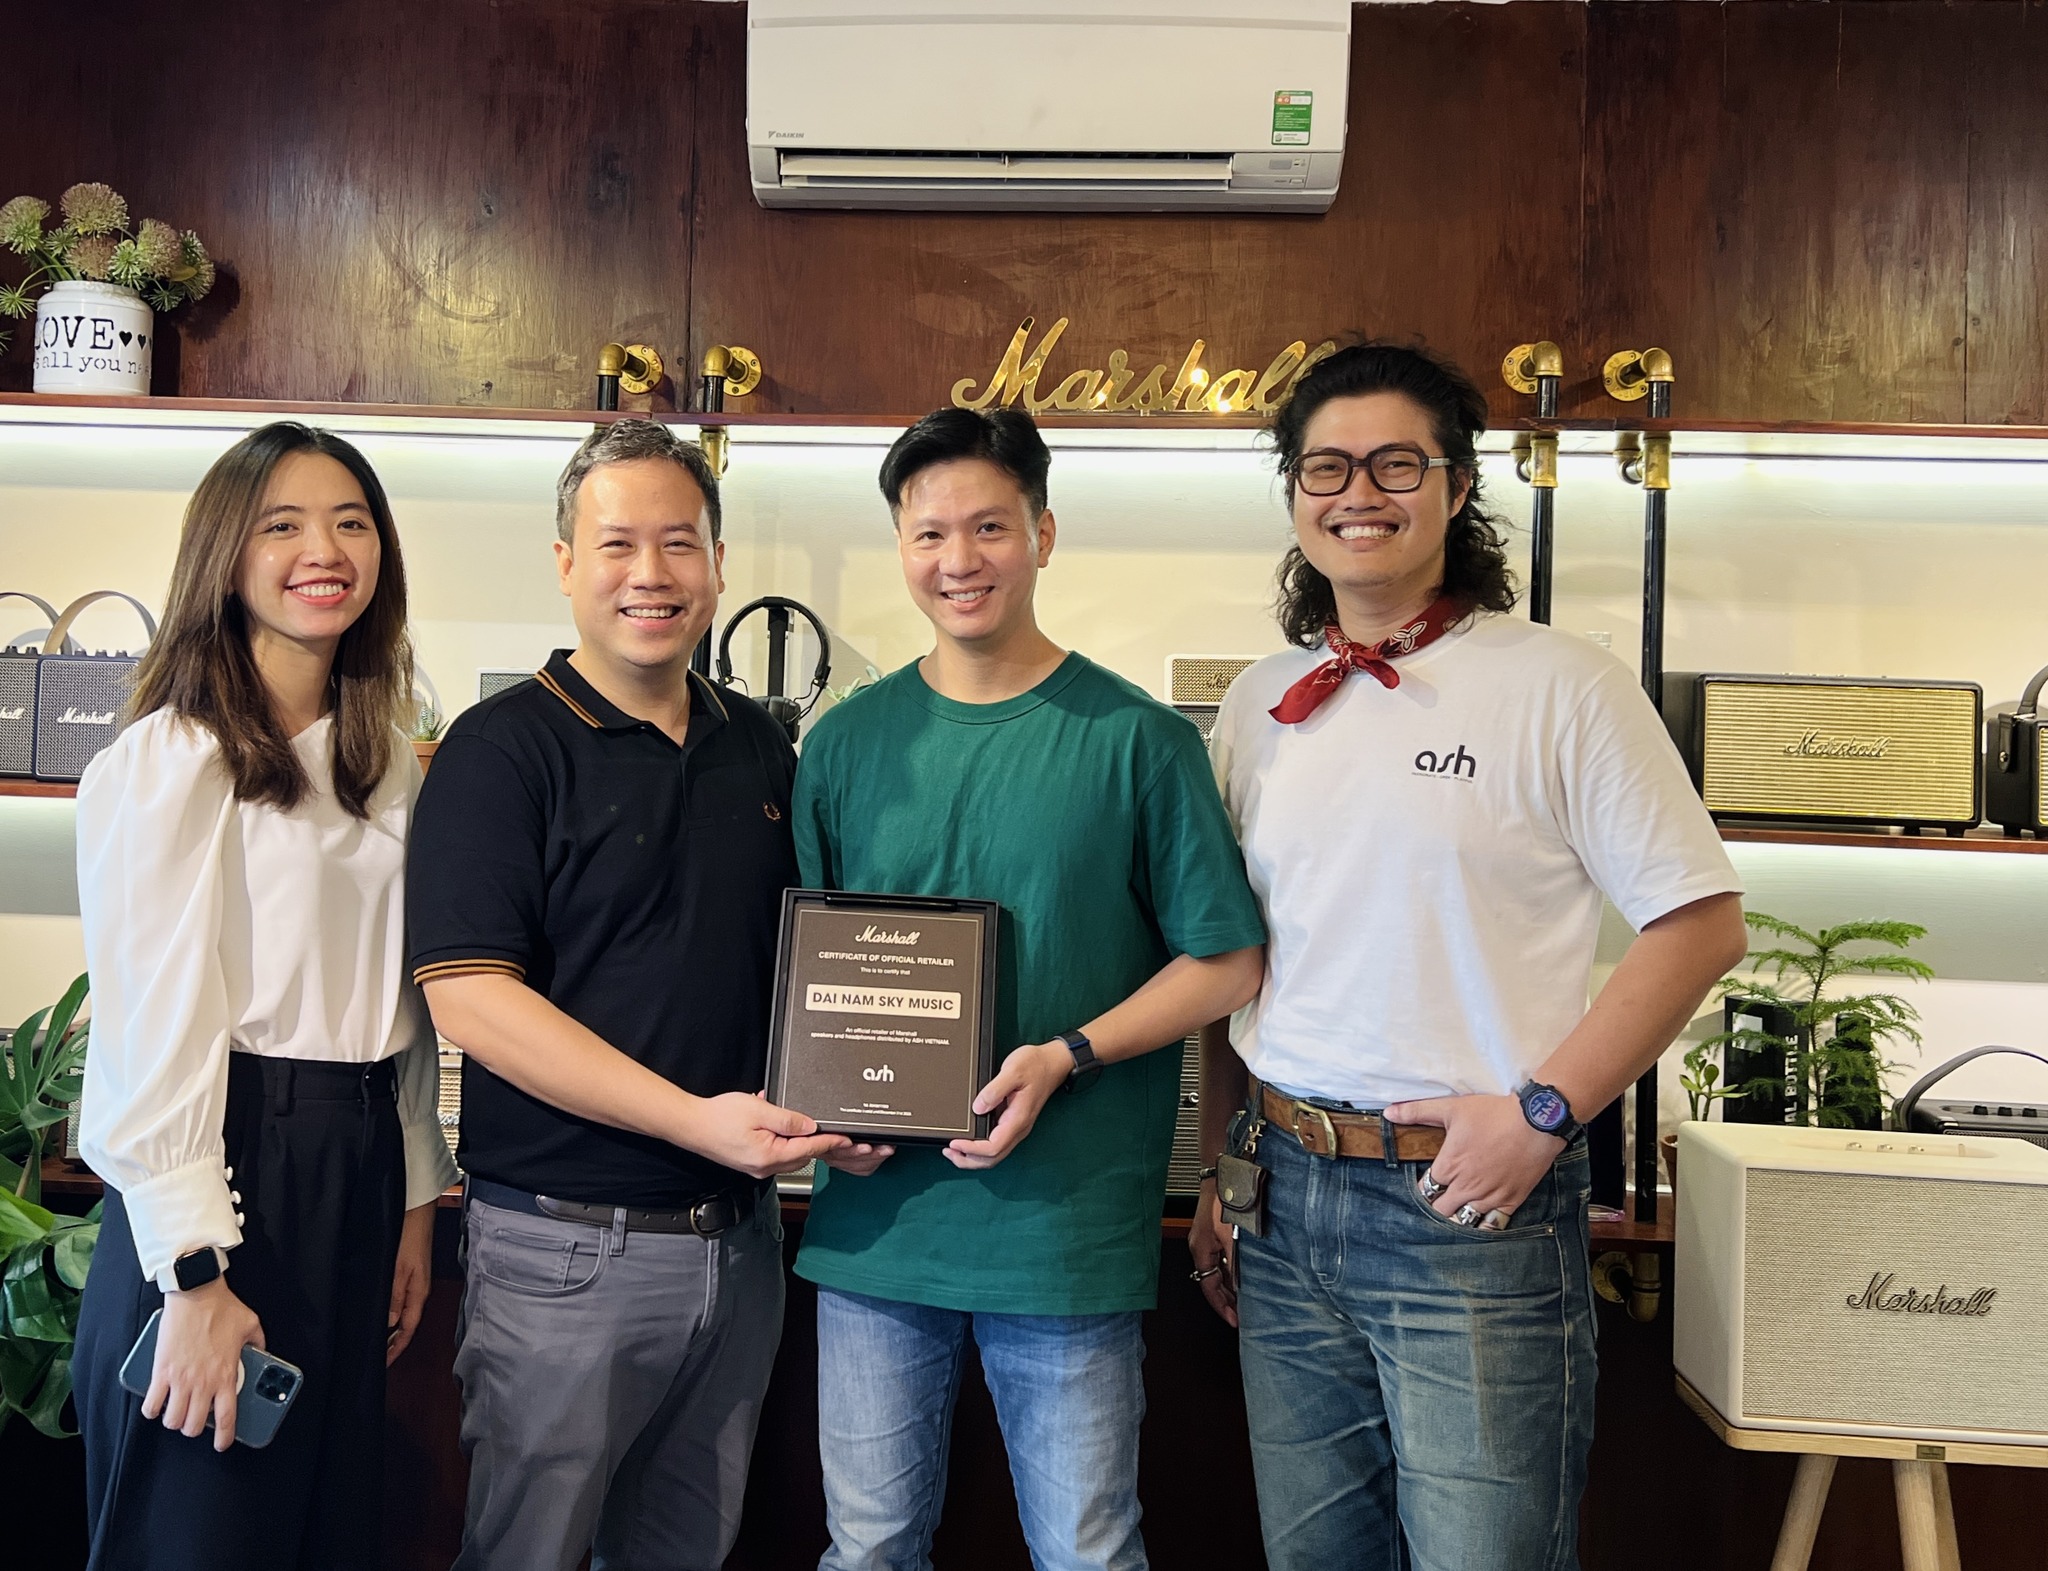 store Đại Nam Sky Music được chứng nhận là đại lý uỷ quyền Marshall từ Ash Asia Vietnam – Nhà phân phối loa và tai nghe Marshall chính hãng tại Việt Nam, ủy quyền bởi Marshall Group Certificate.